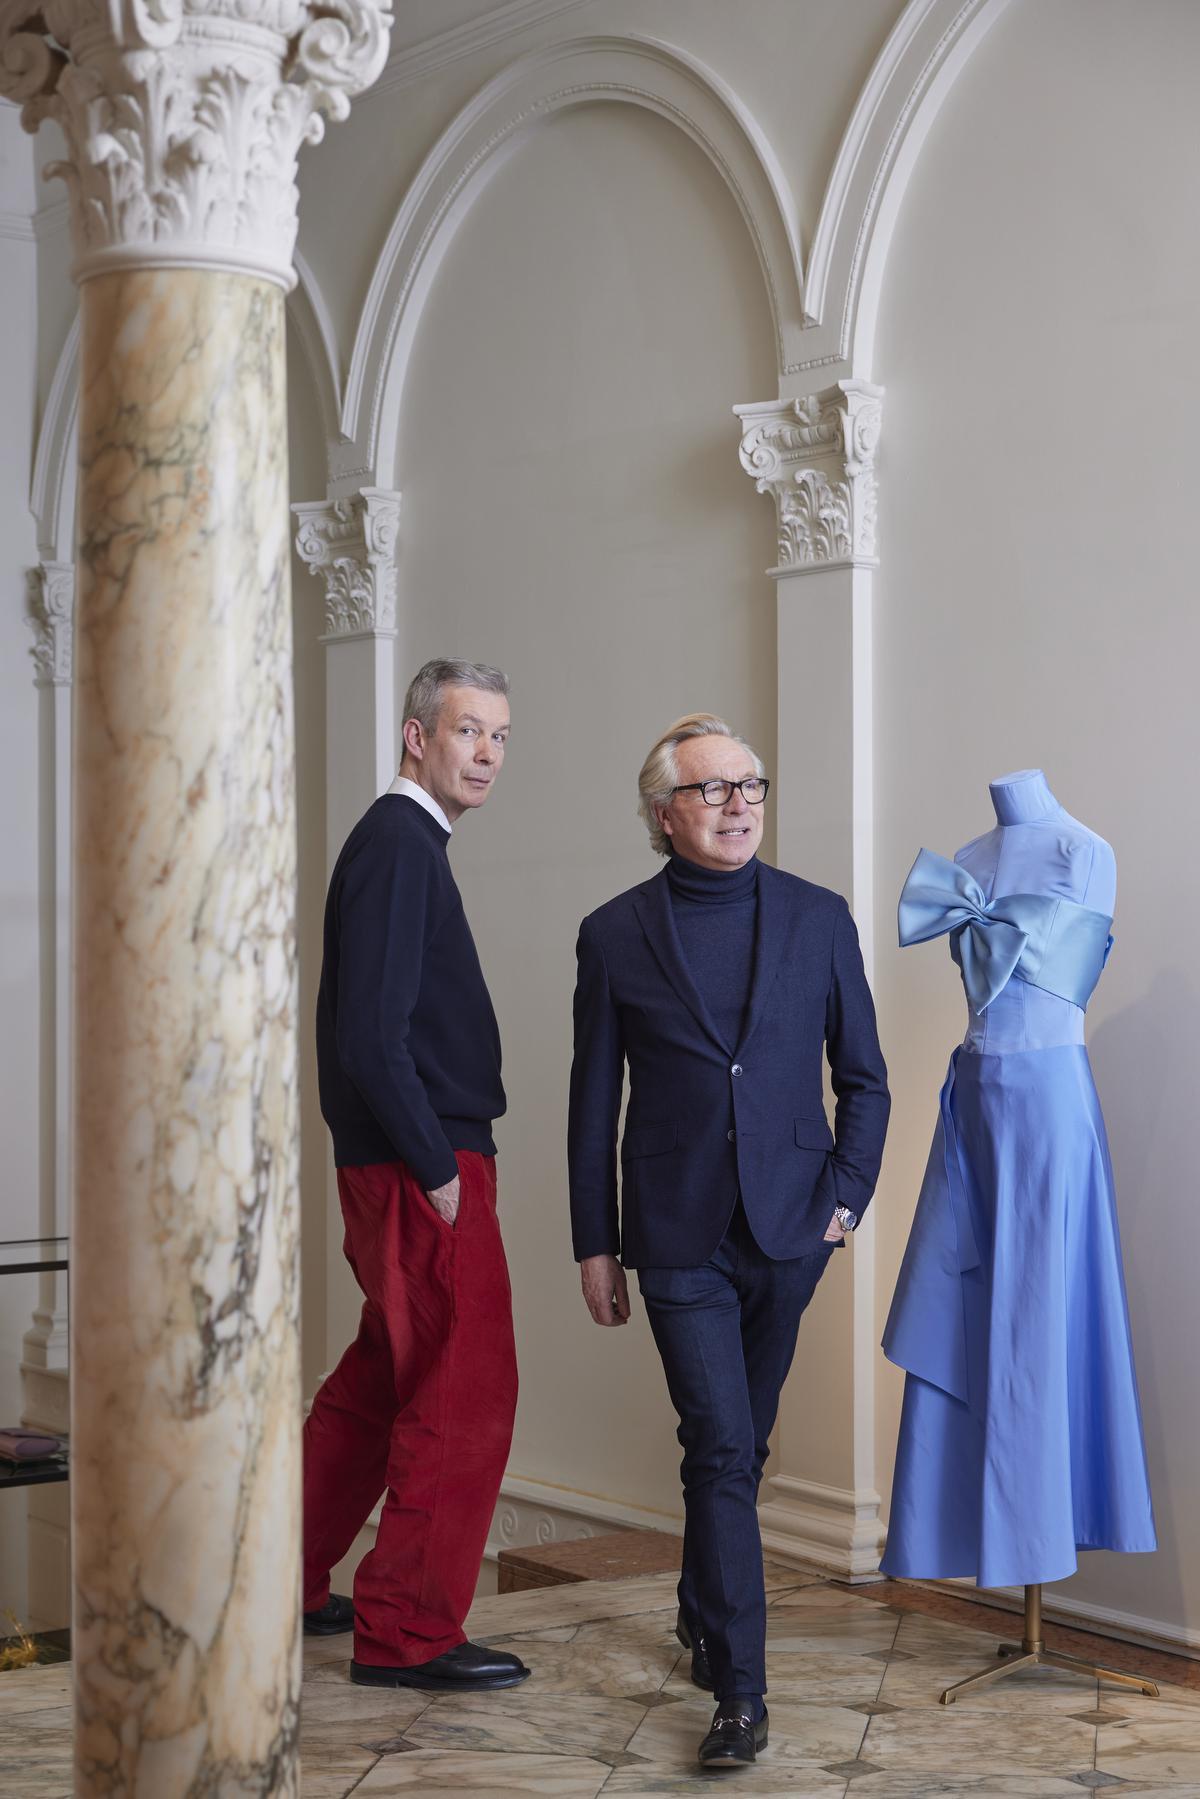 De samenwerking tussen Christophe Coppens en Edouard Vermeulen zorgt voor een frisse wind door het modehuis Natan.© Dirk Alexander